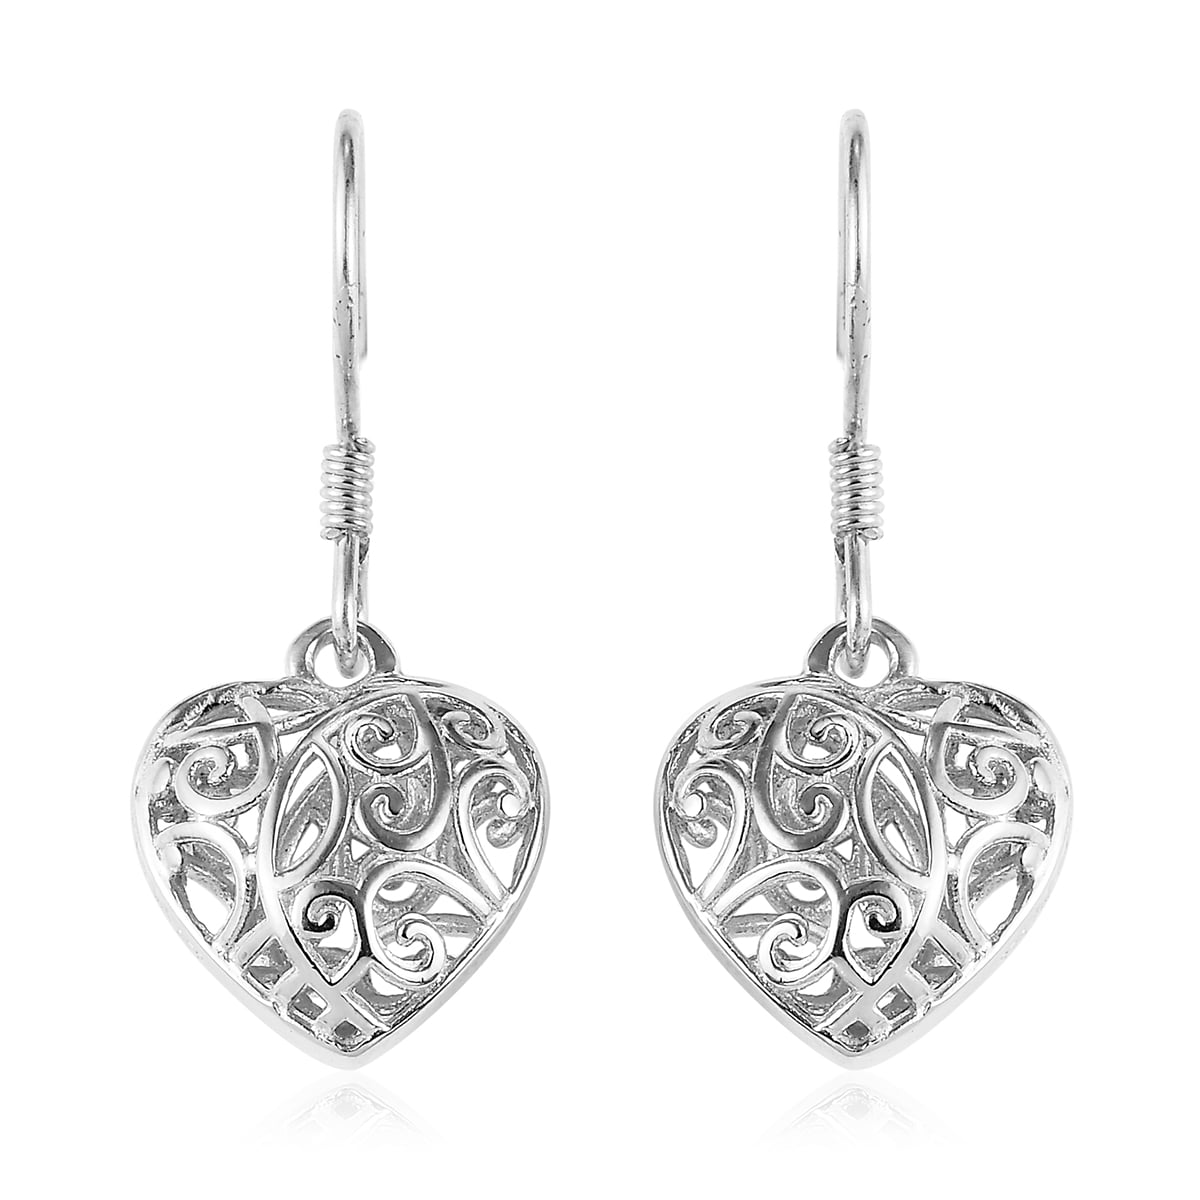 Shop LC - Shop LC Openwork Heart Dangle Drop Earrings 925 Sterling